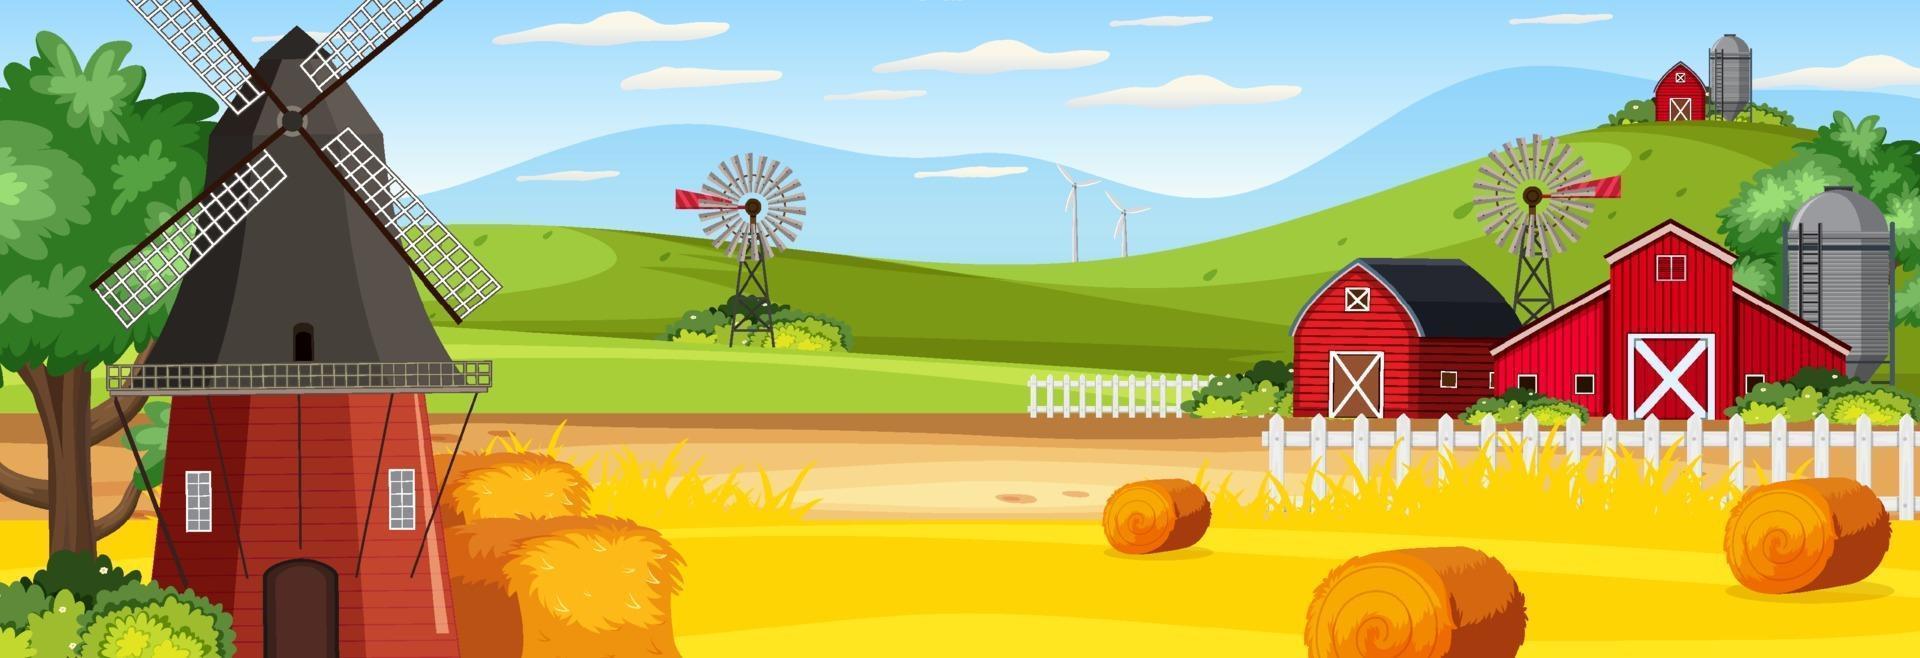 scène de paysage horizontal de ferme avec grange et moulin à vent vecteur